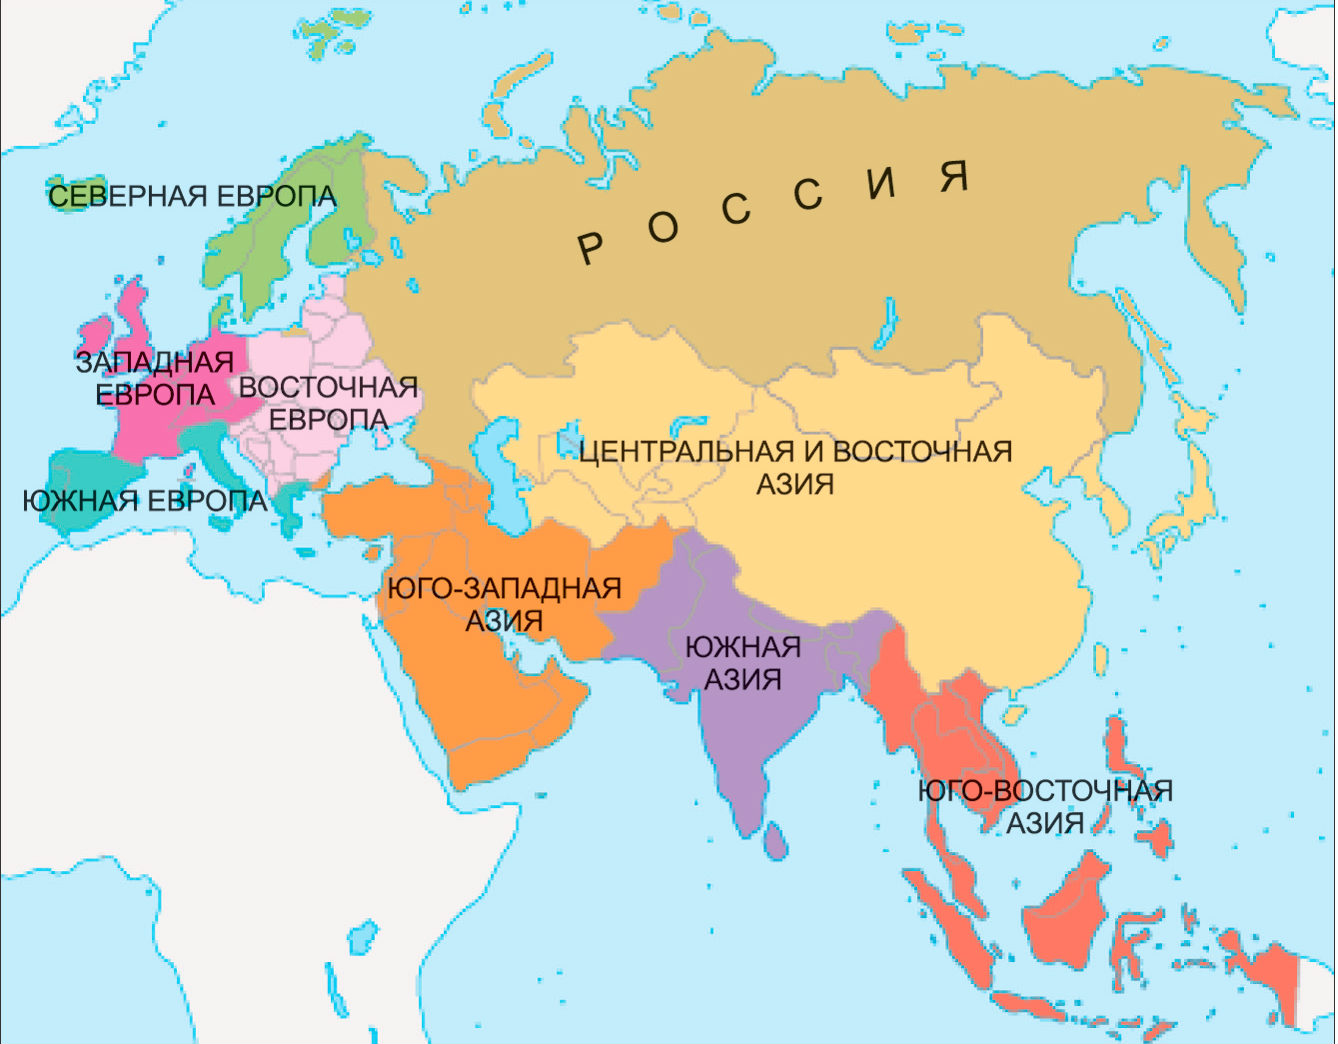 Какая страна евразии имеет приморское положение. Карта Европы Азии Евразии со странами. Материк Евразия на карте. Материк Евразия Европа и Азия. Границы материка Евразия.